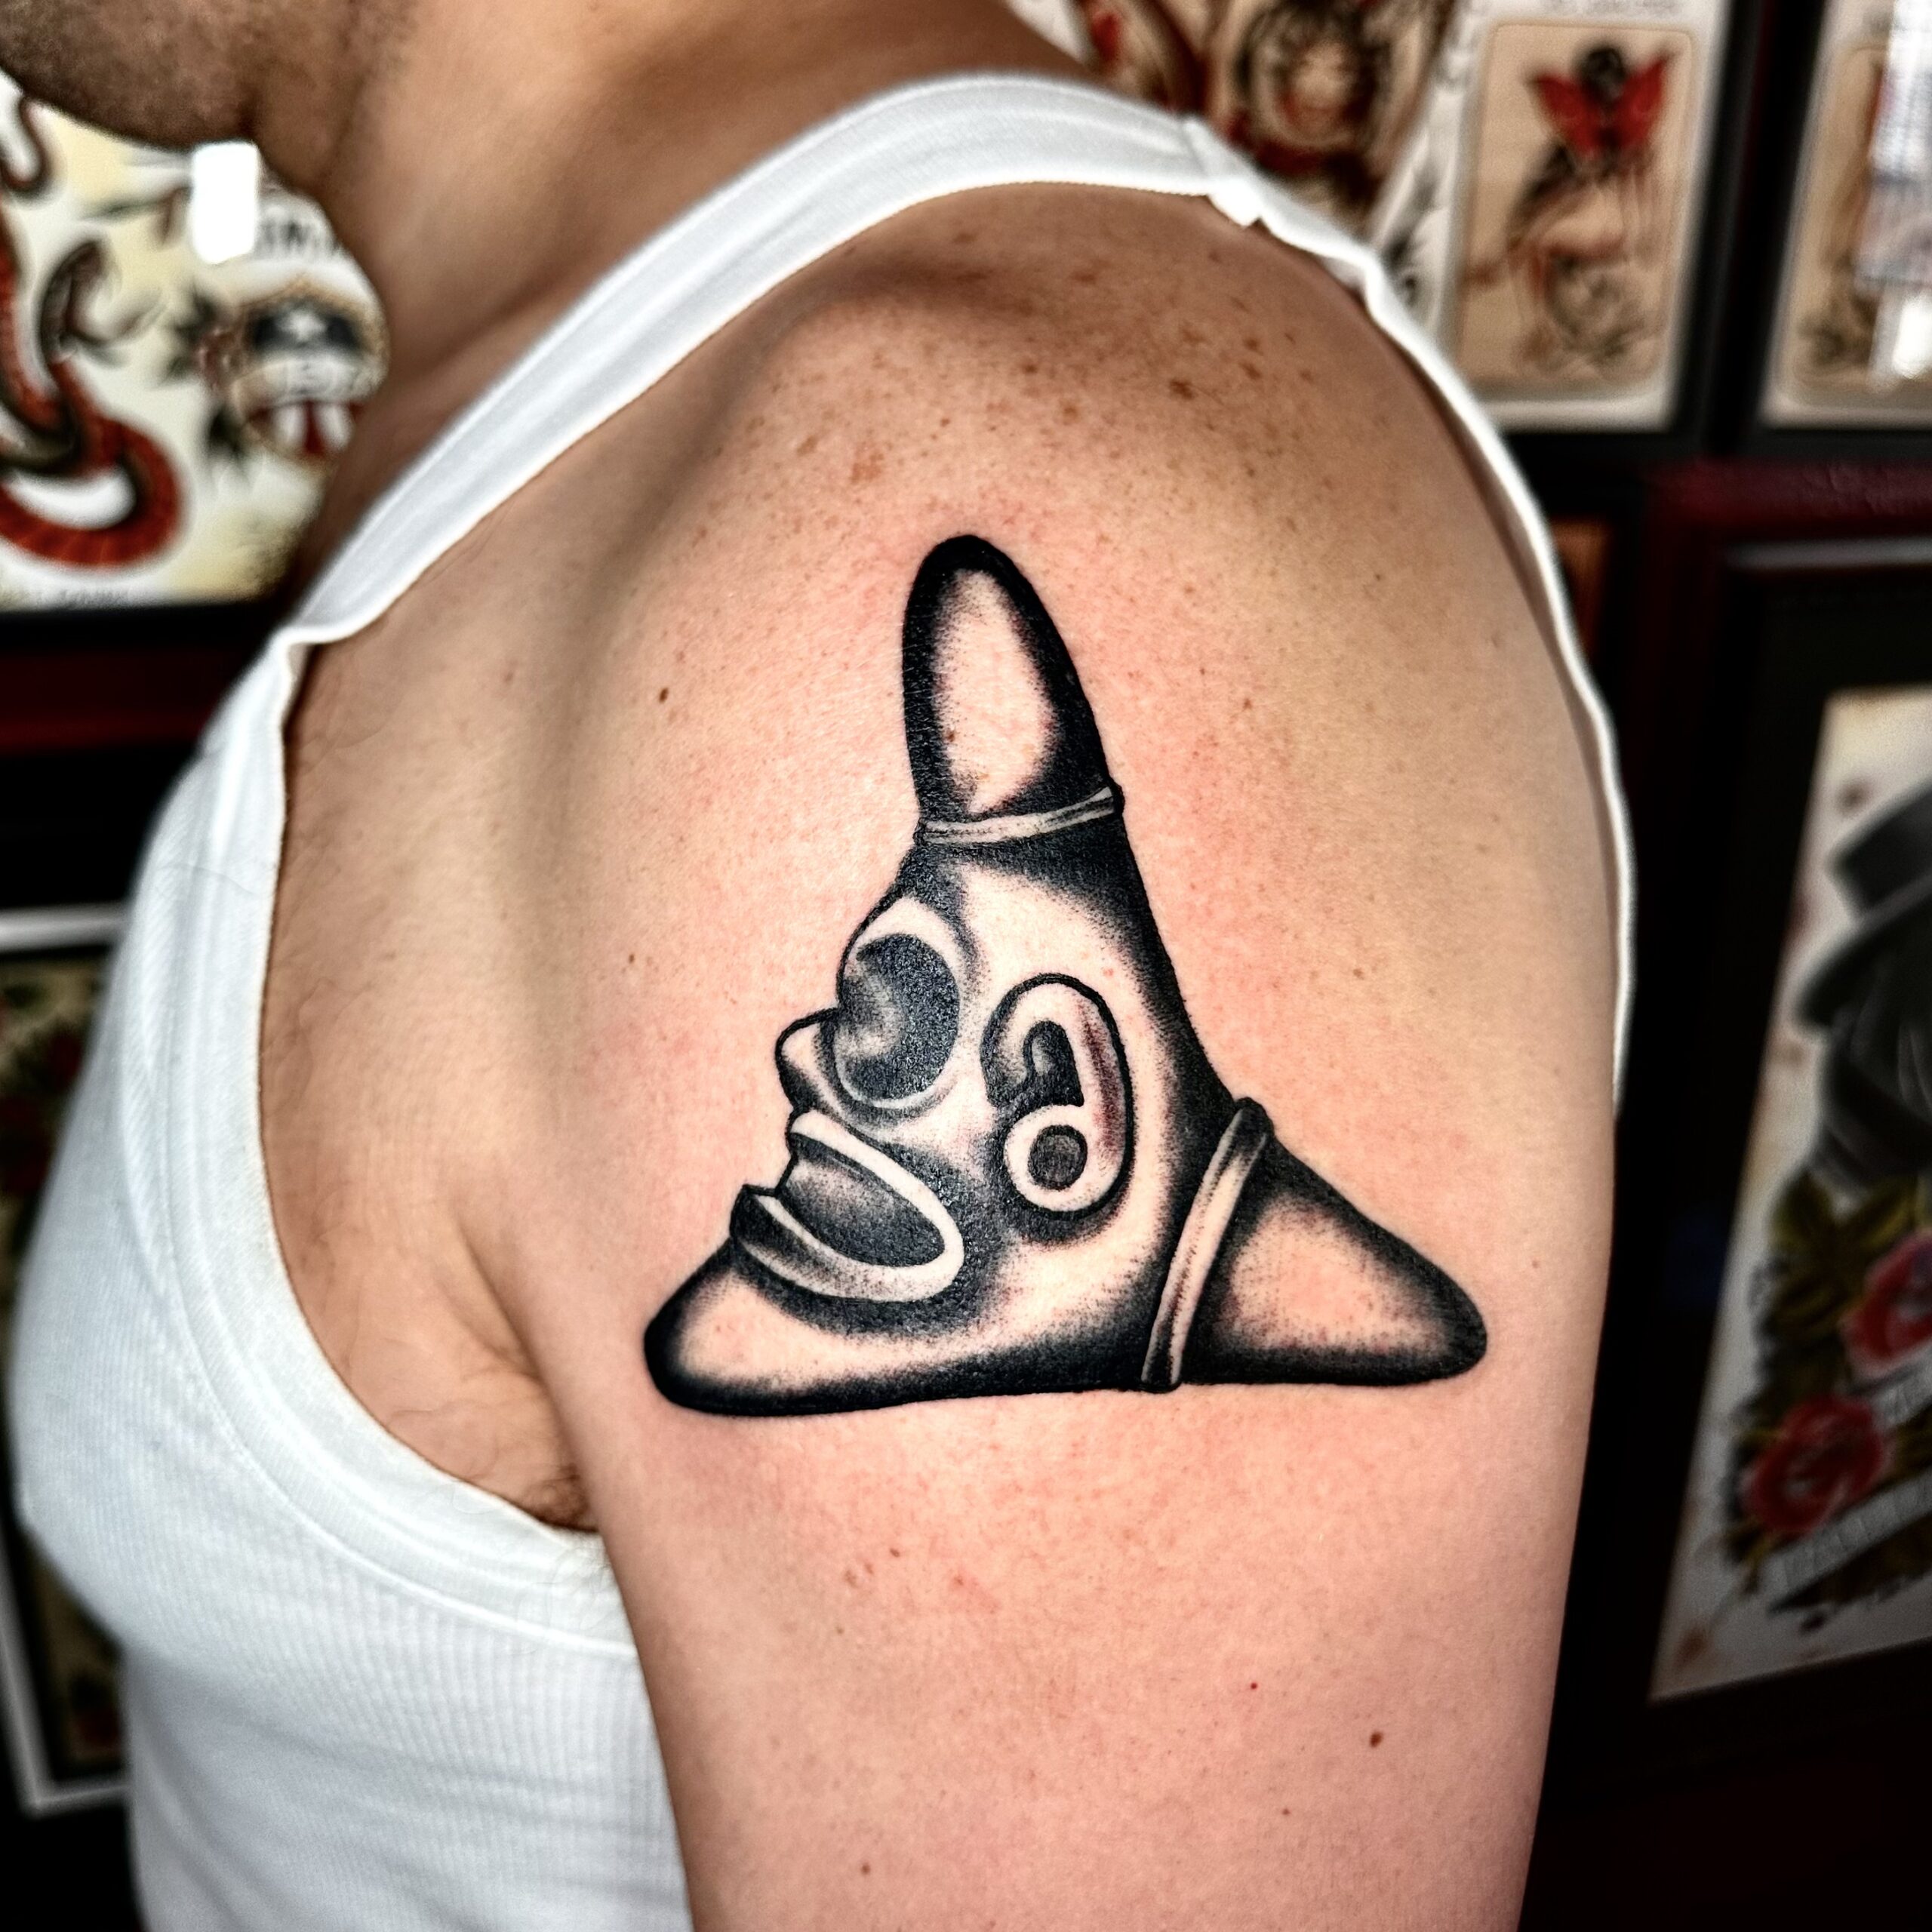 Tattoo from the top Dallas tattoo artist